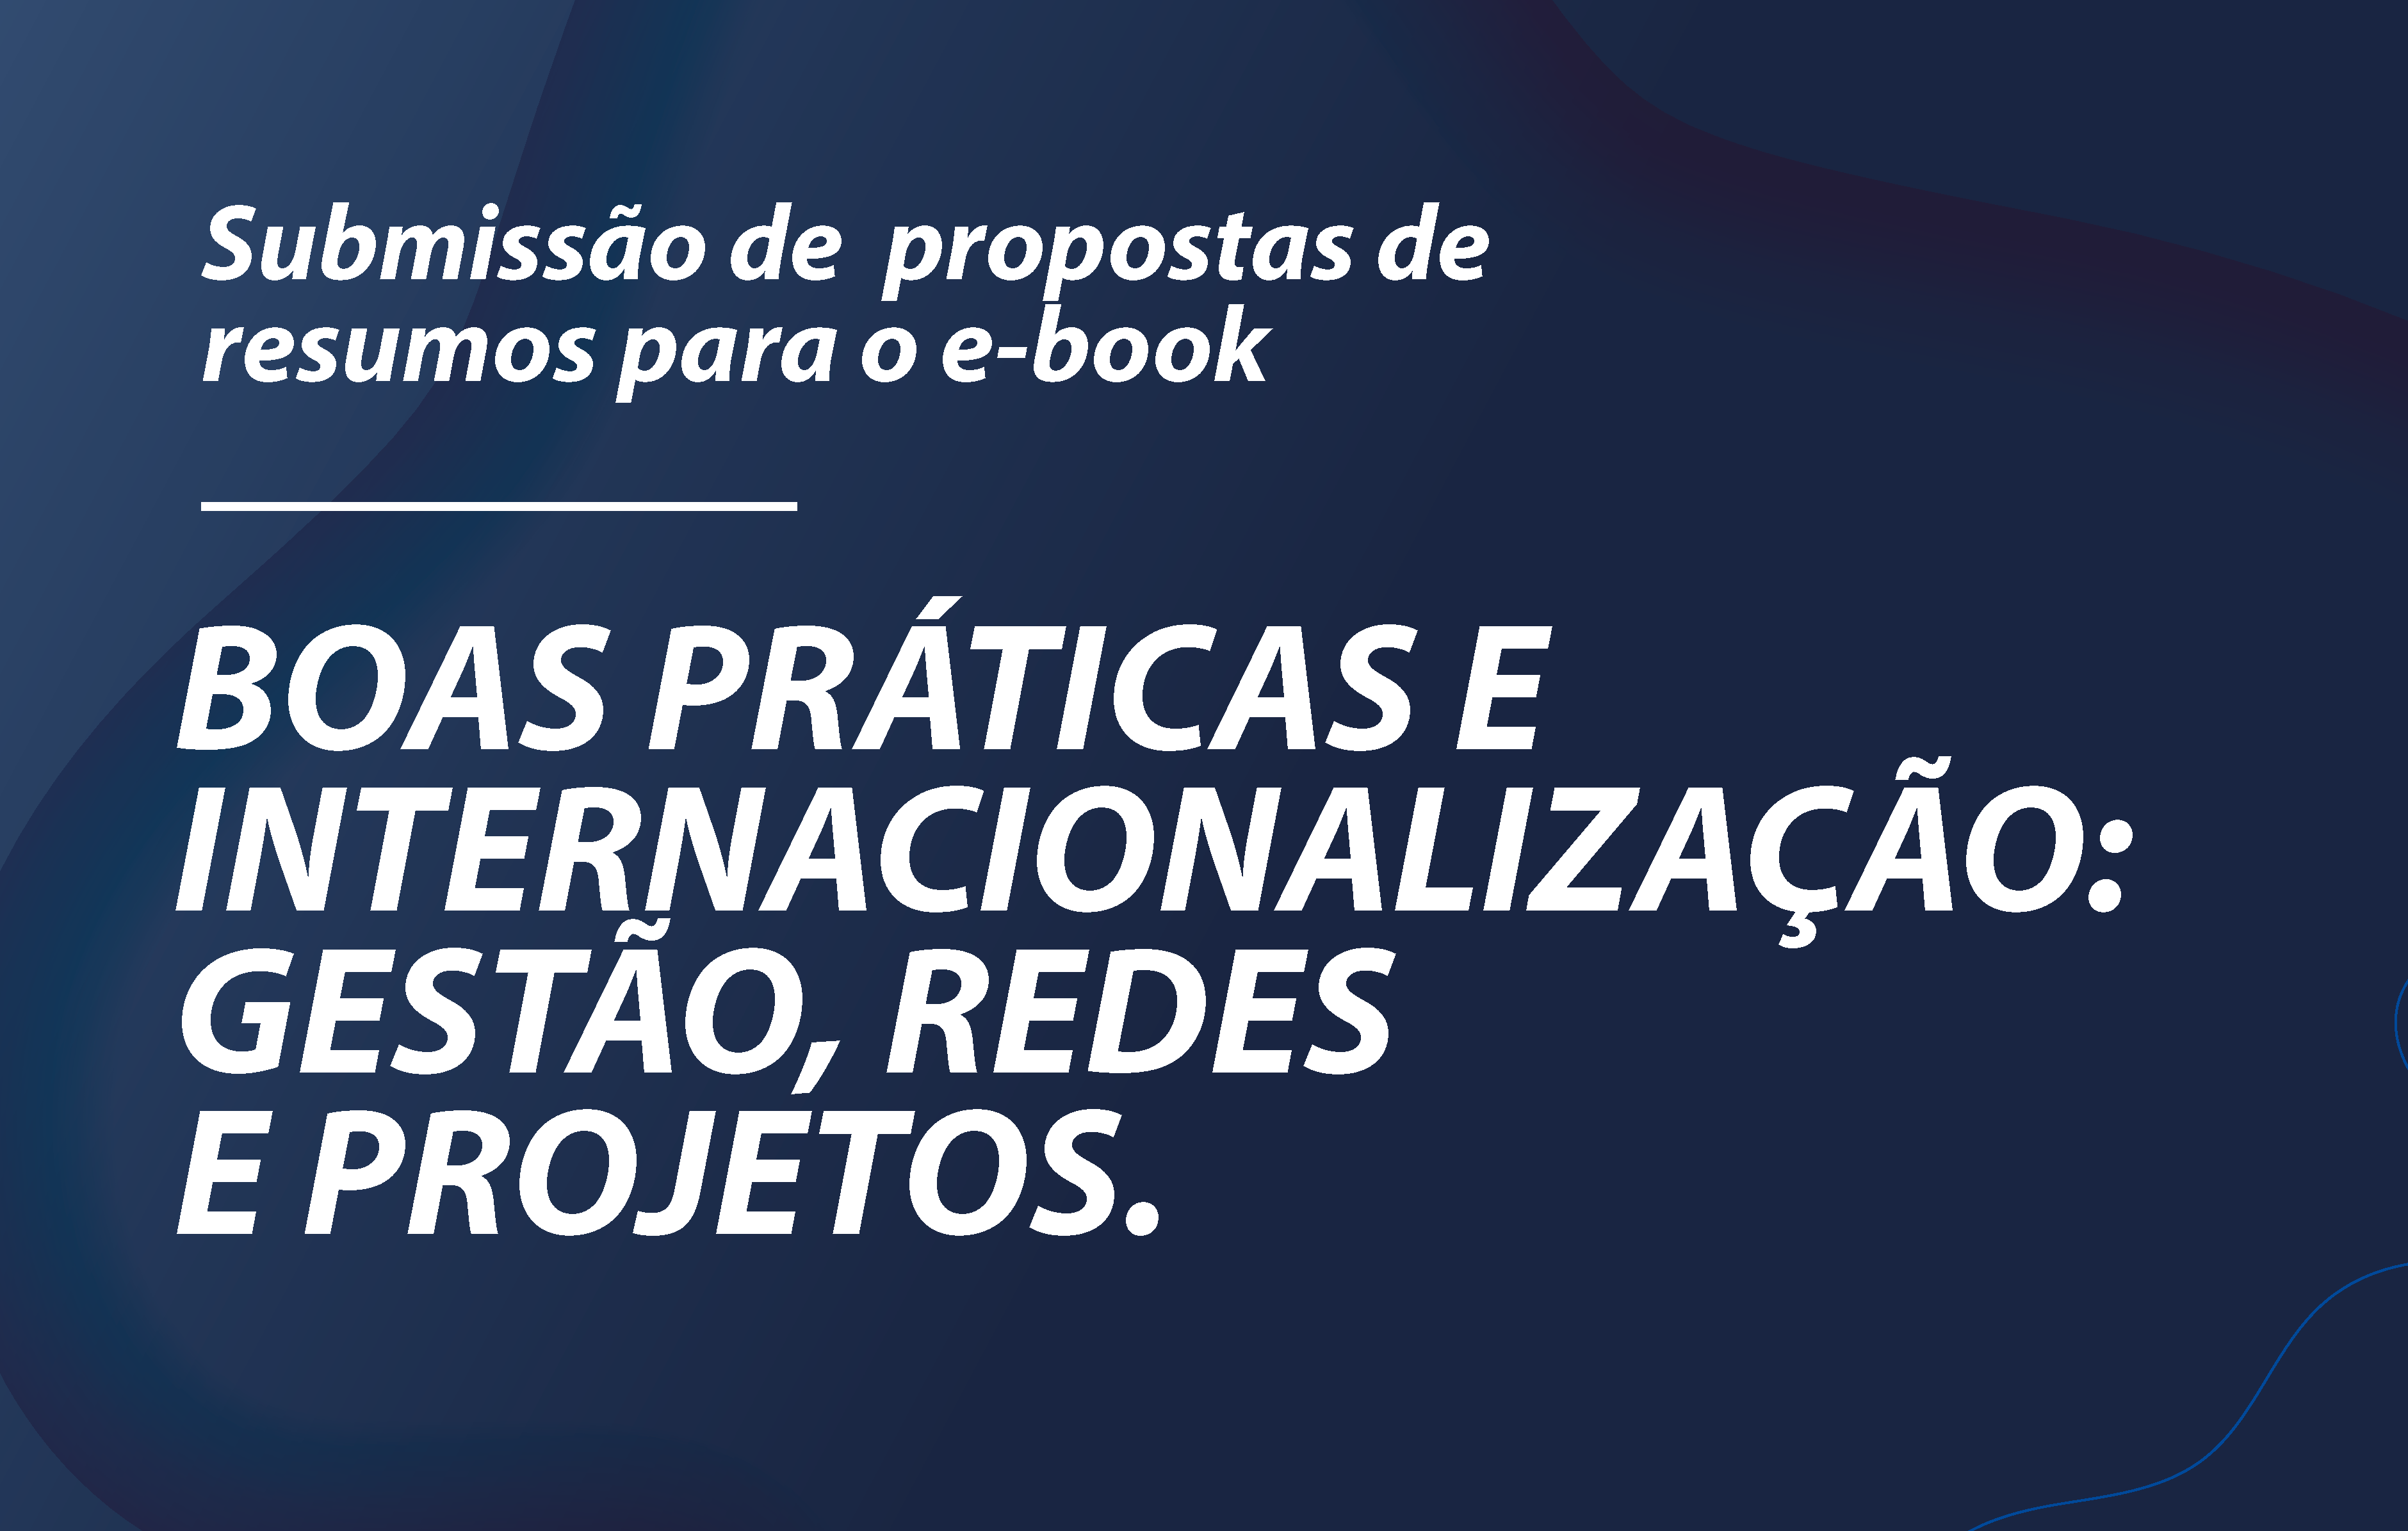 Câmara de Internacionalização da Abruem convida instituições filiadas para colaborarem com e-book